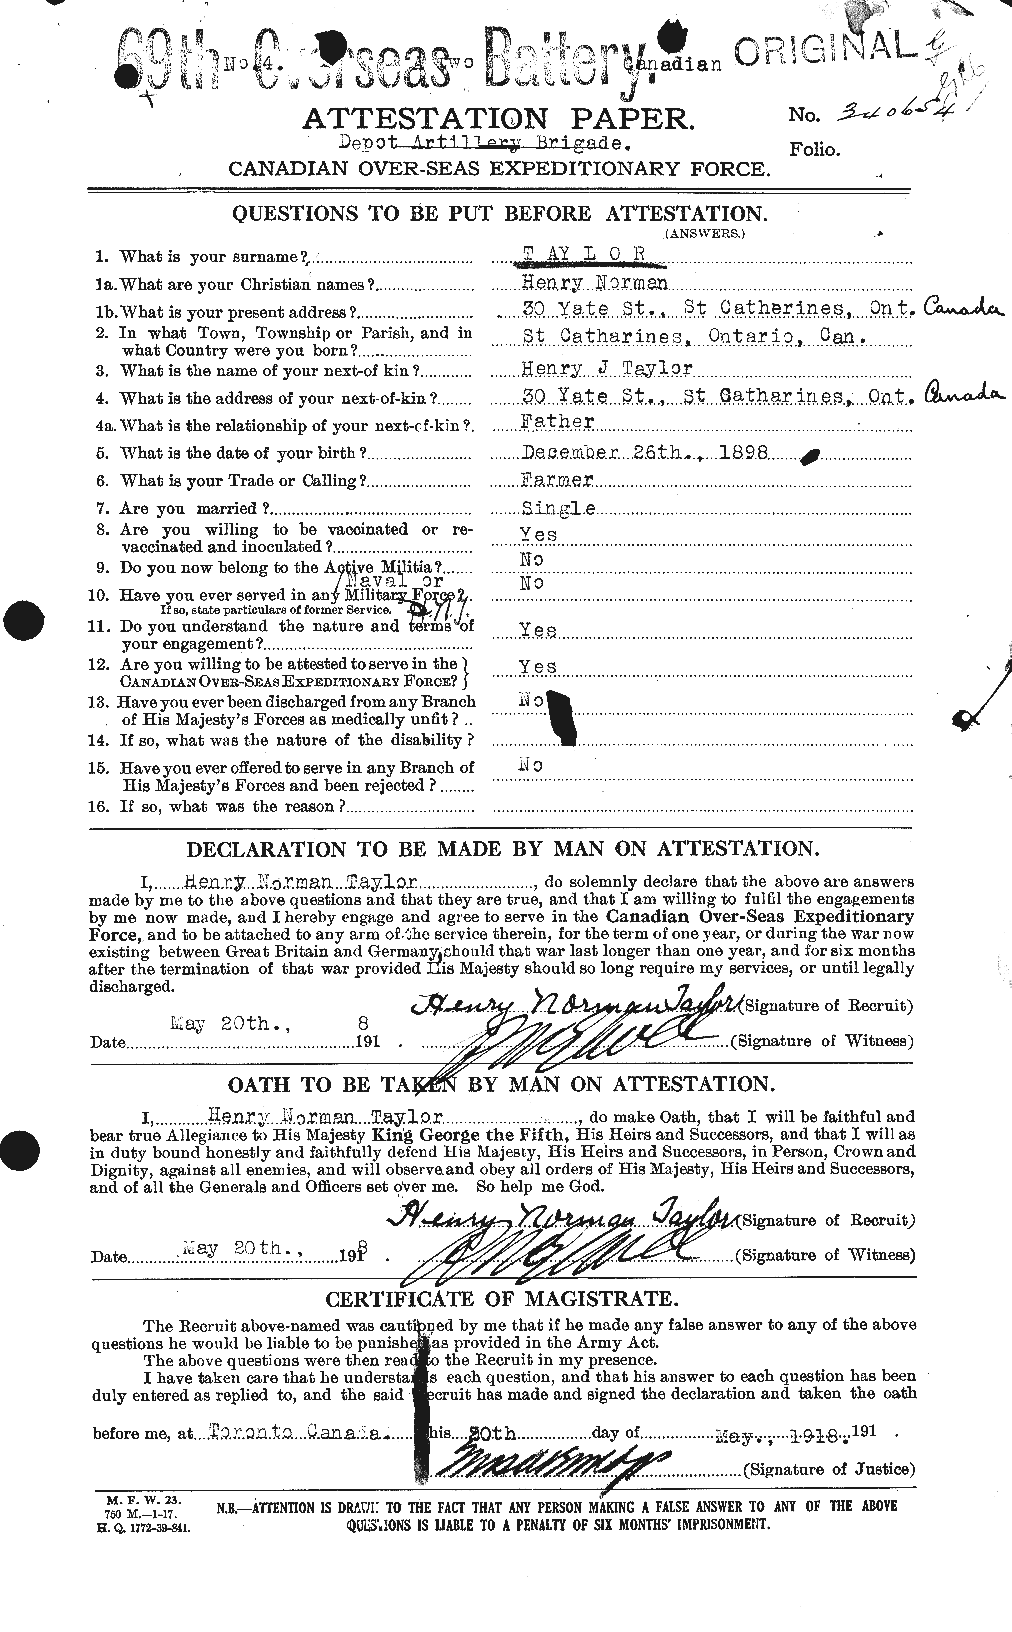 Dossiers du Personnel de la Première Guerre mondiale - CEC 626552a